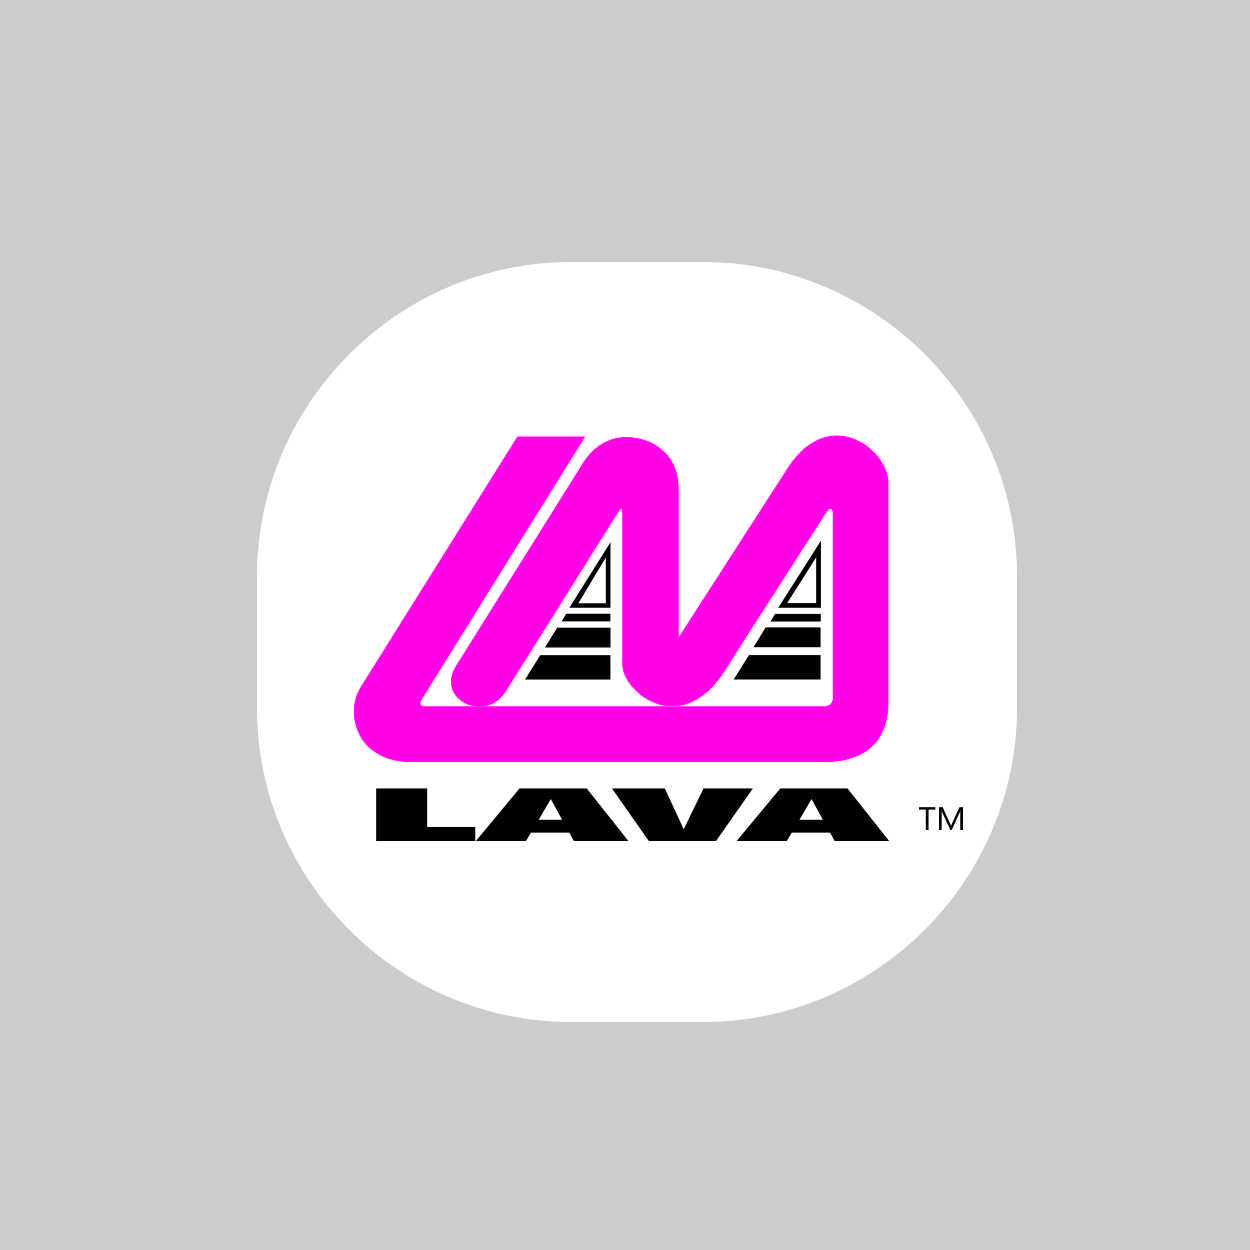 LAVA logo for LAVA blog